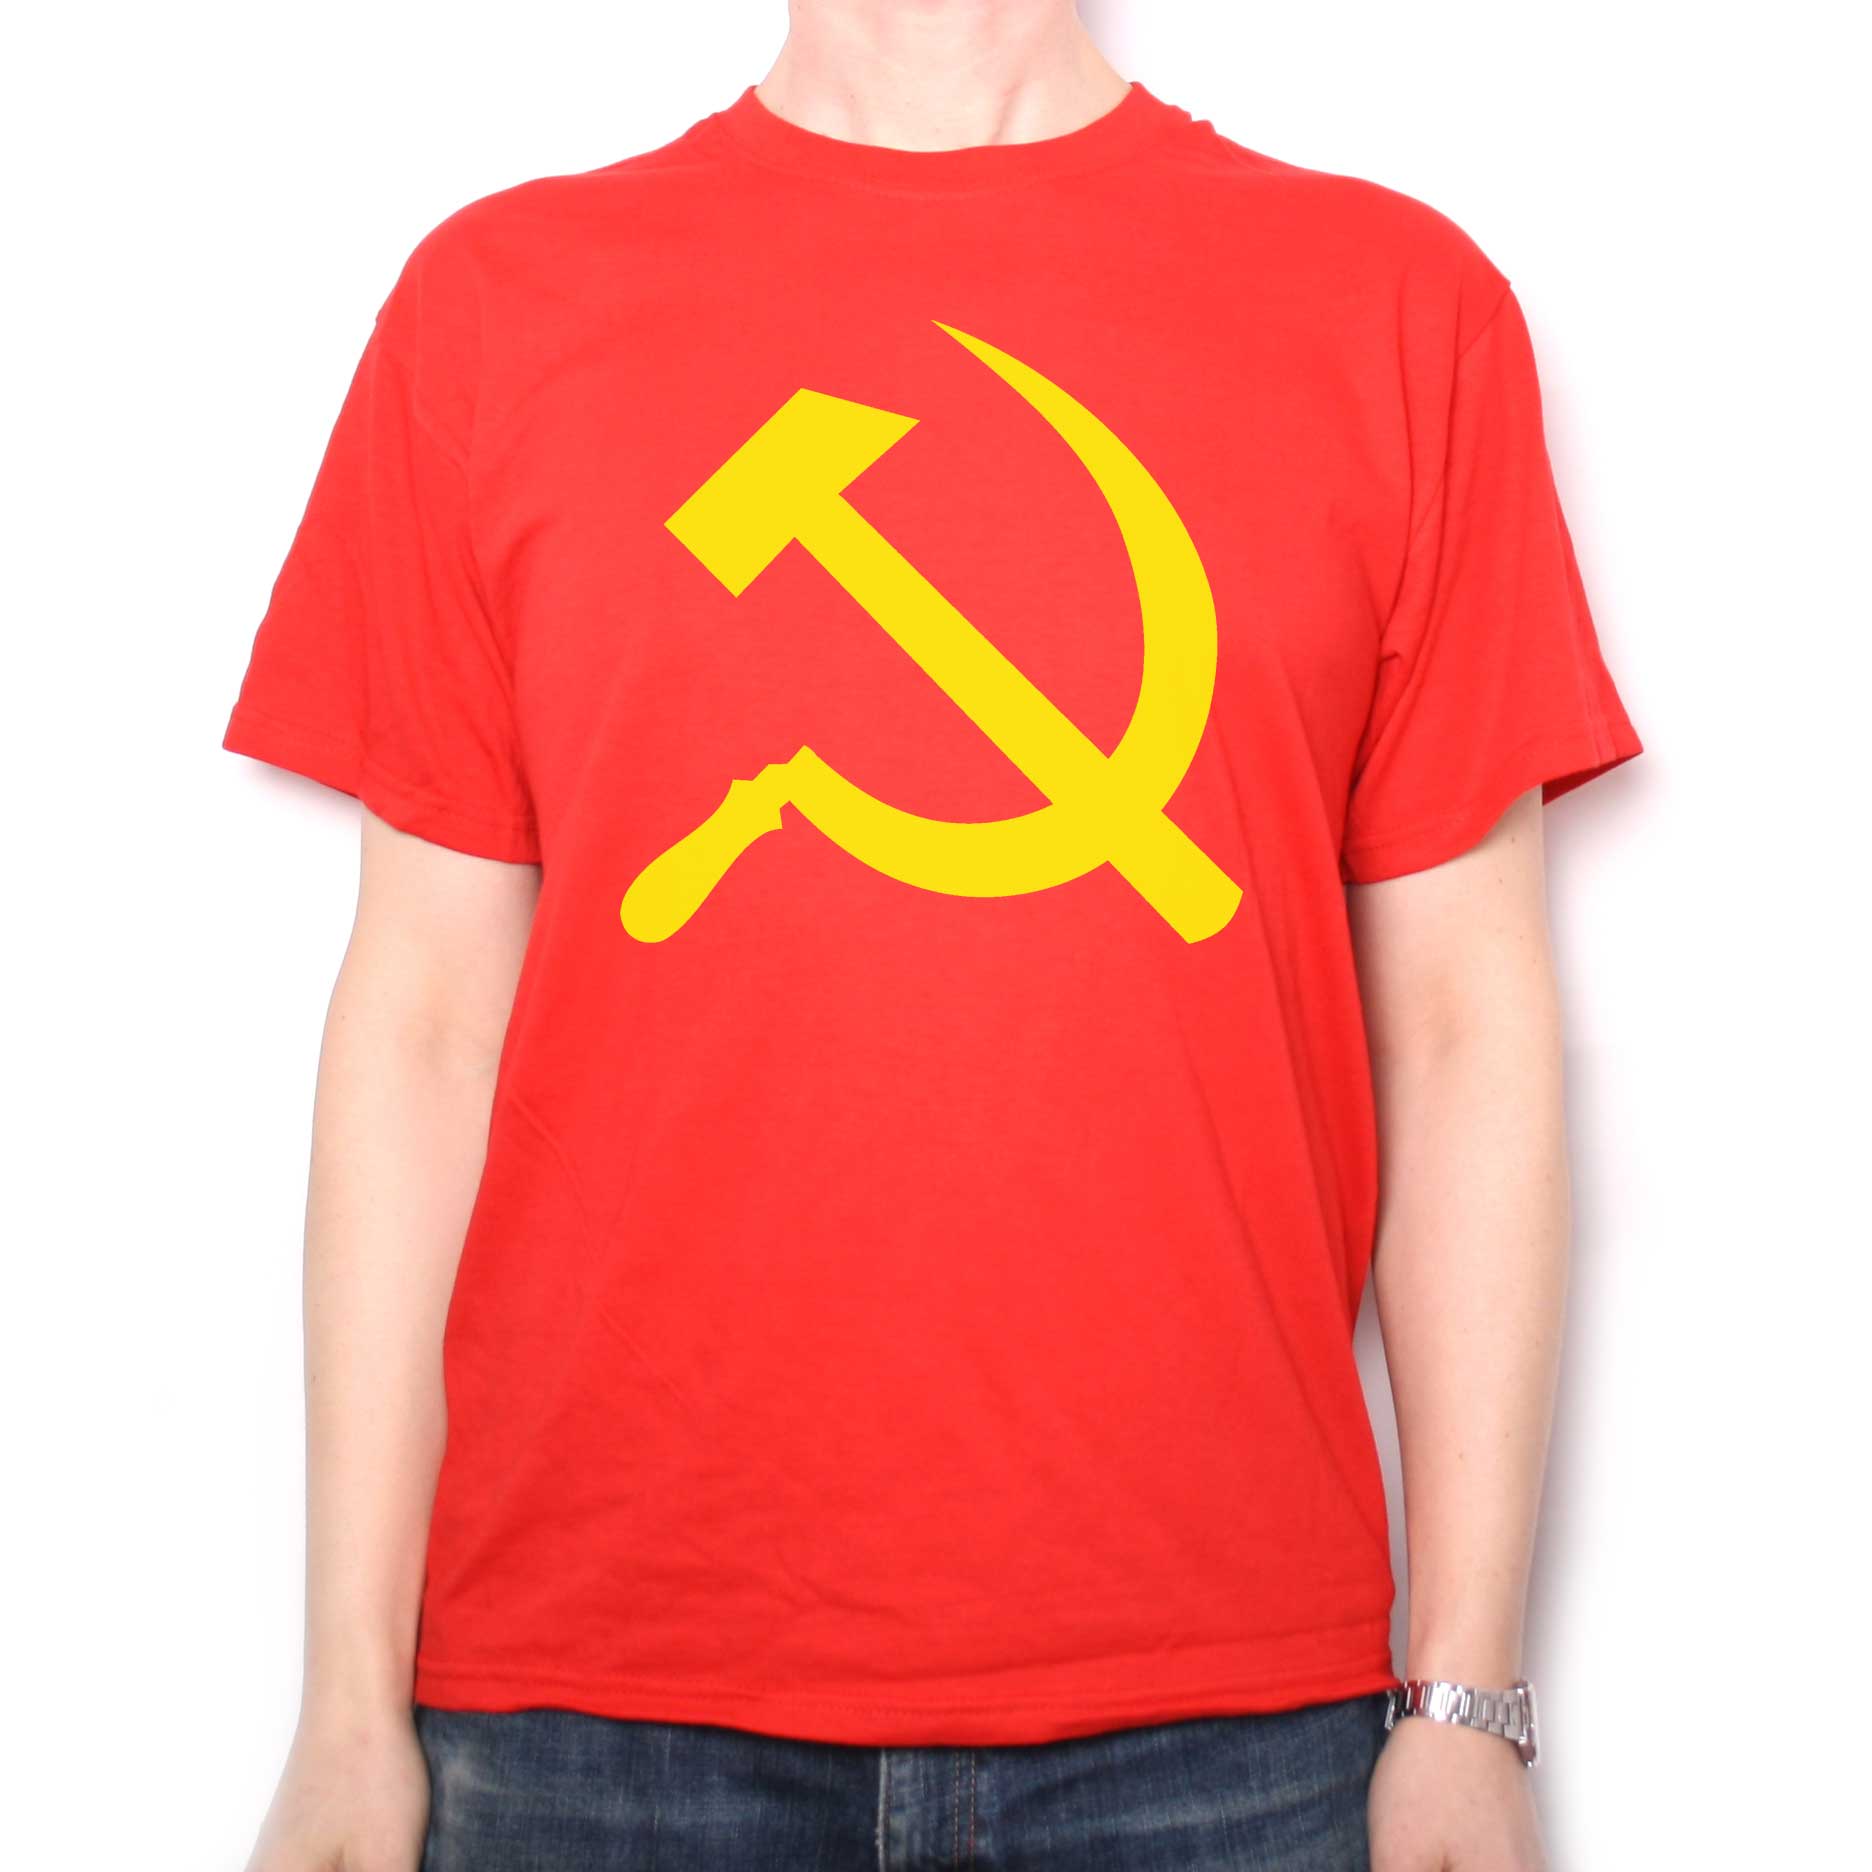 Hammer & Sickle T | Communist T Shirts at Old Skool Hooligans